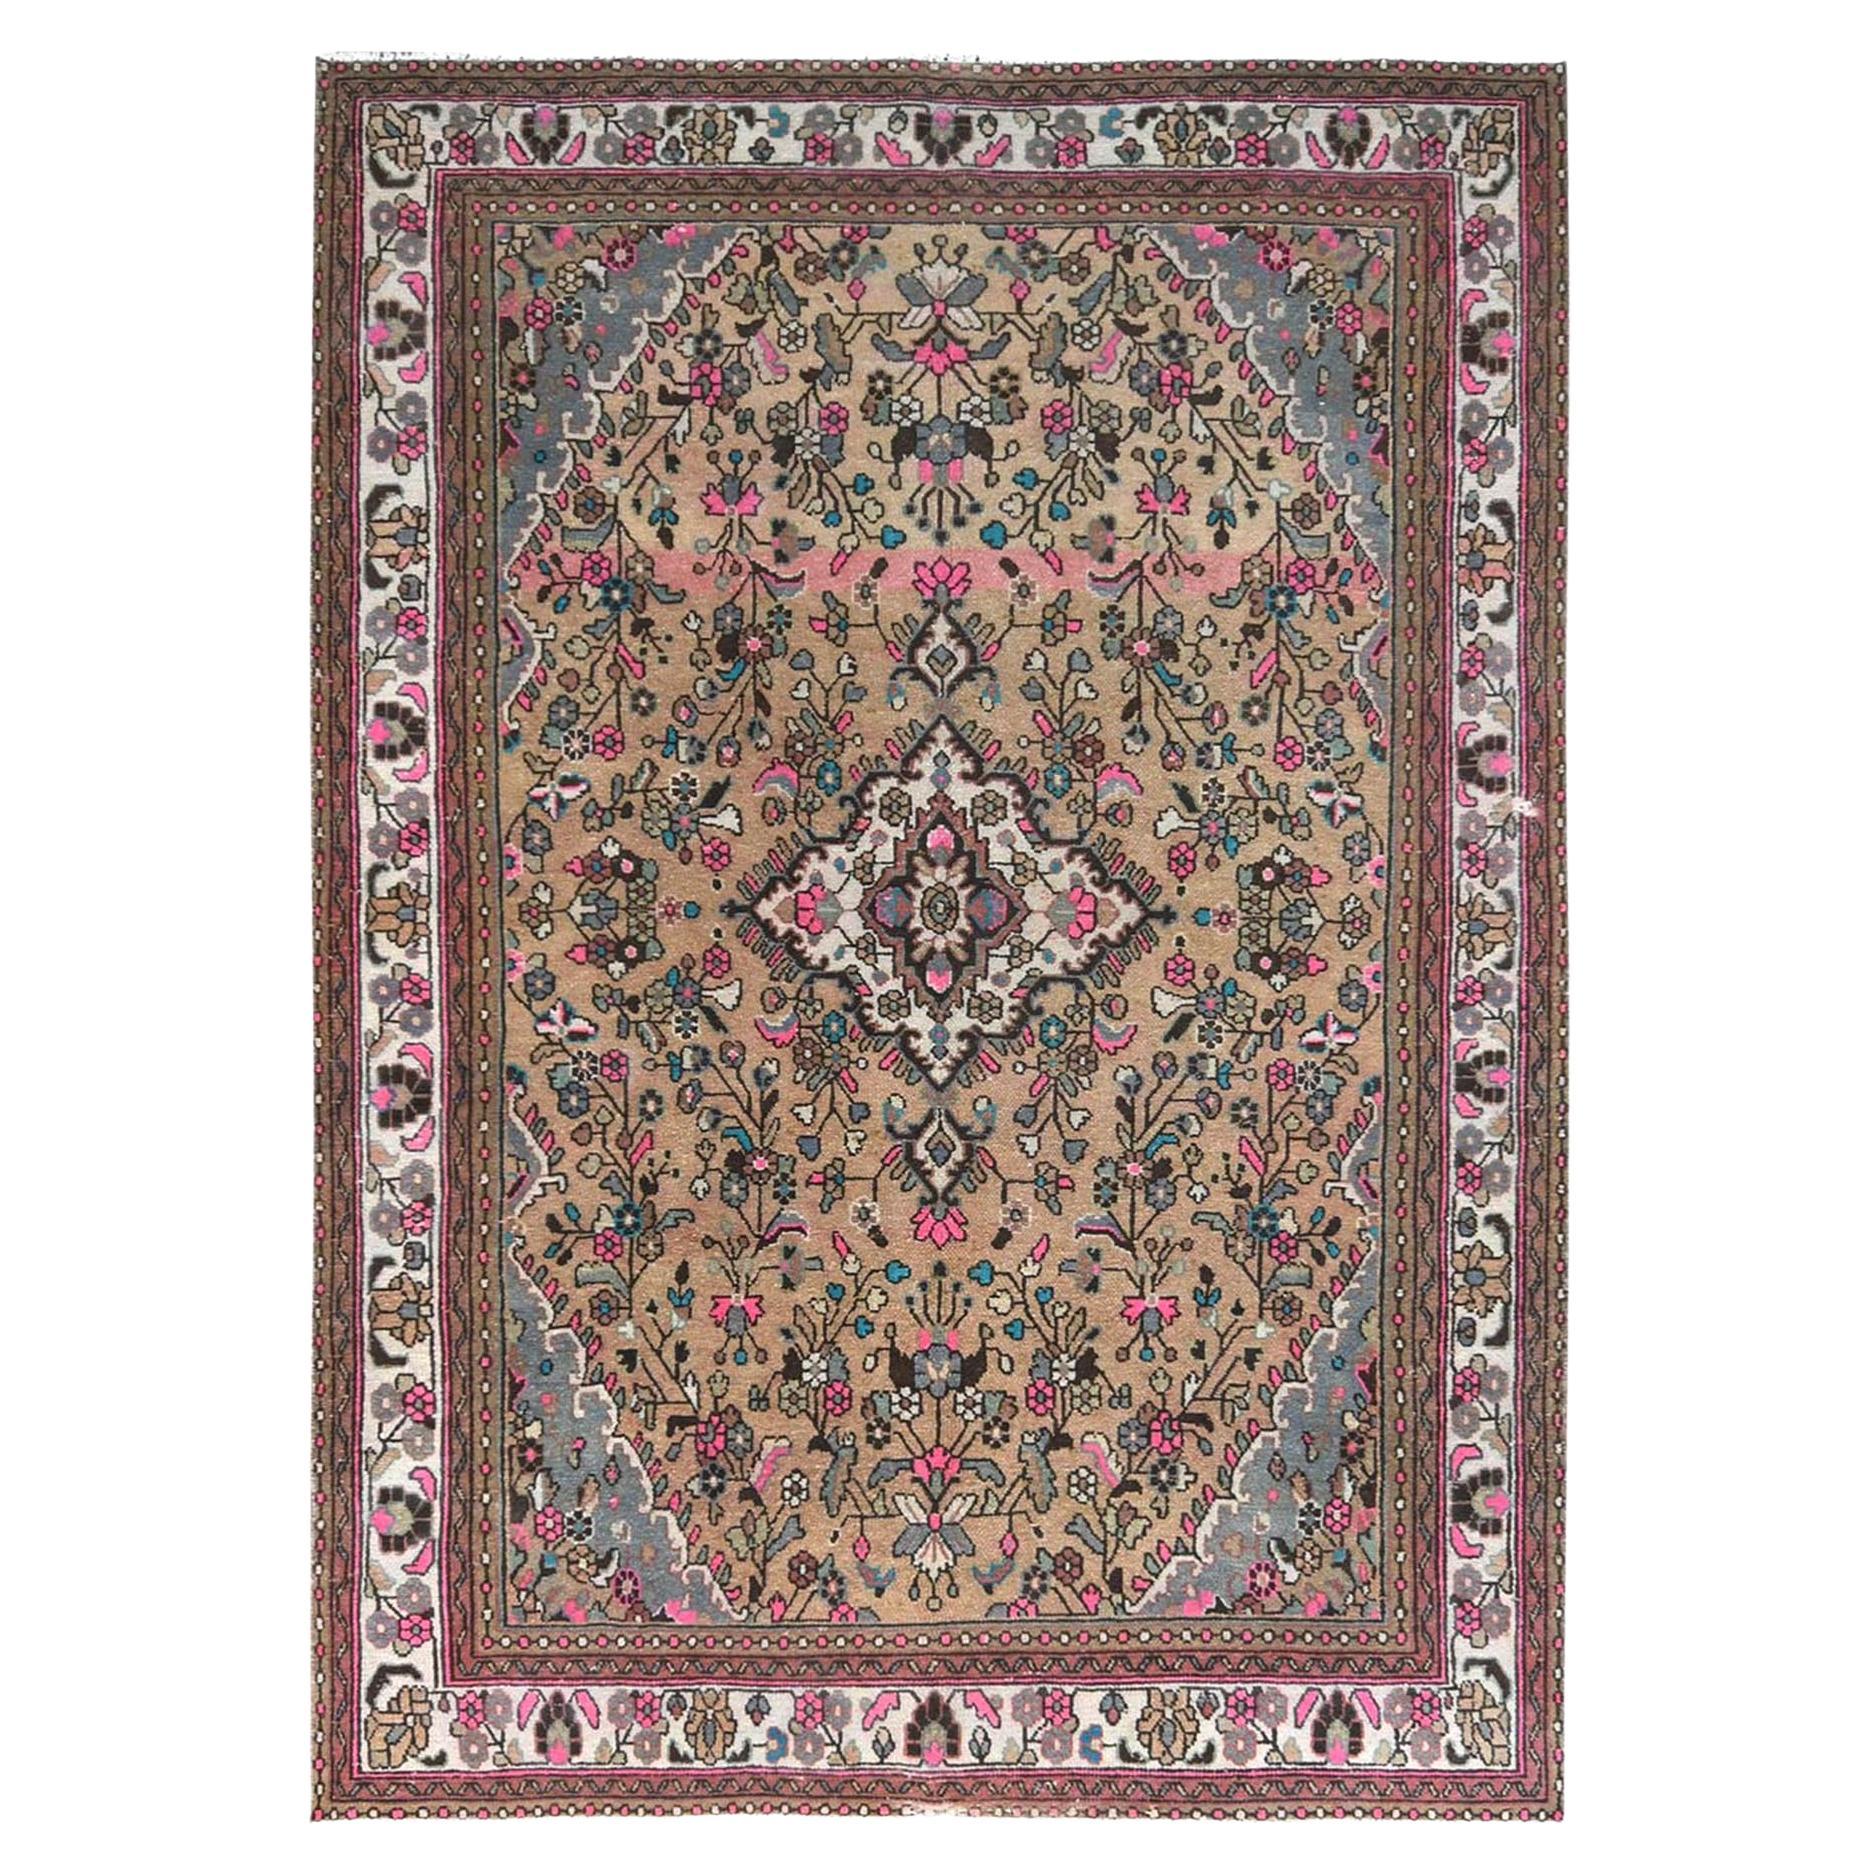 Mocha Brauner, handgeknüpfter persischer Hamadan-Teppich aus Wolle im Used-Look